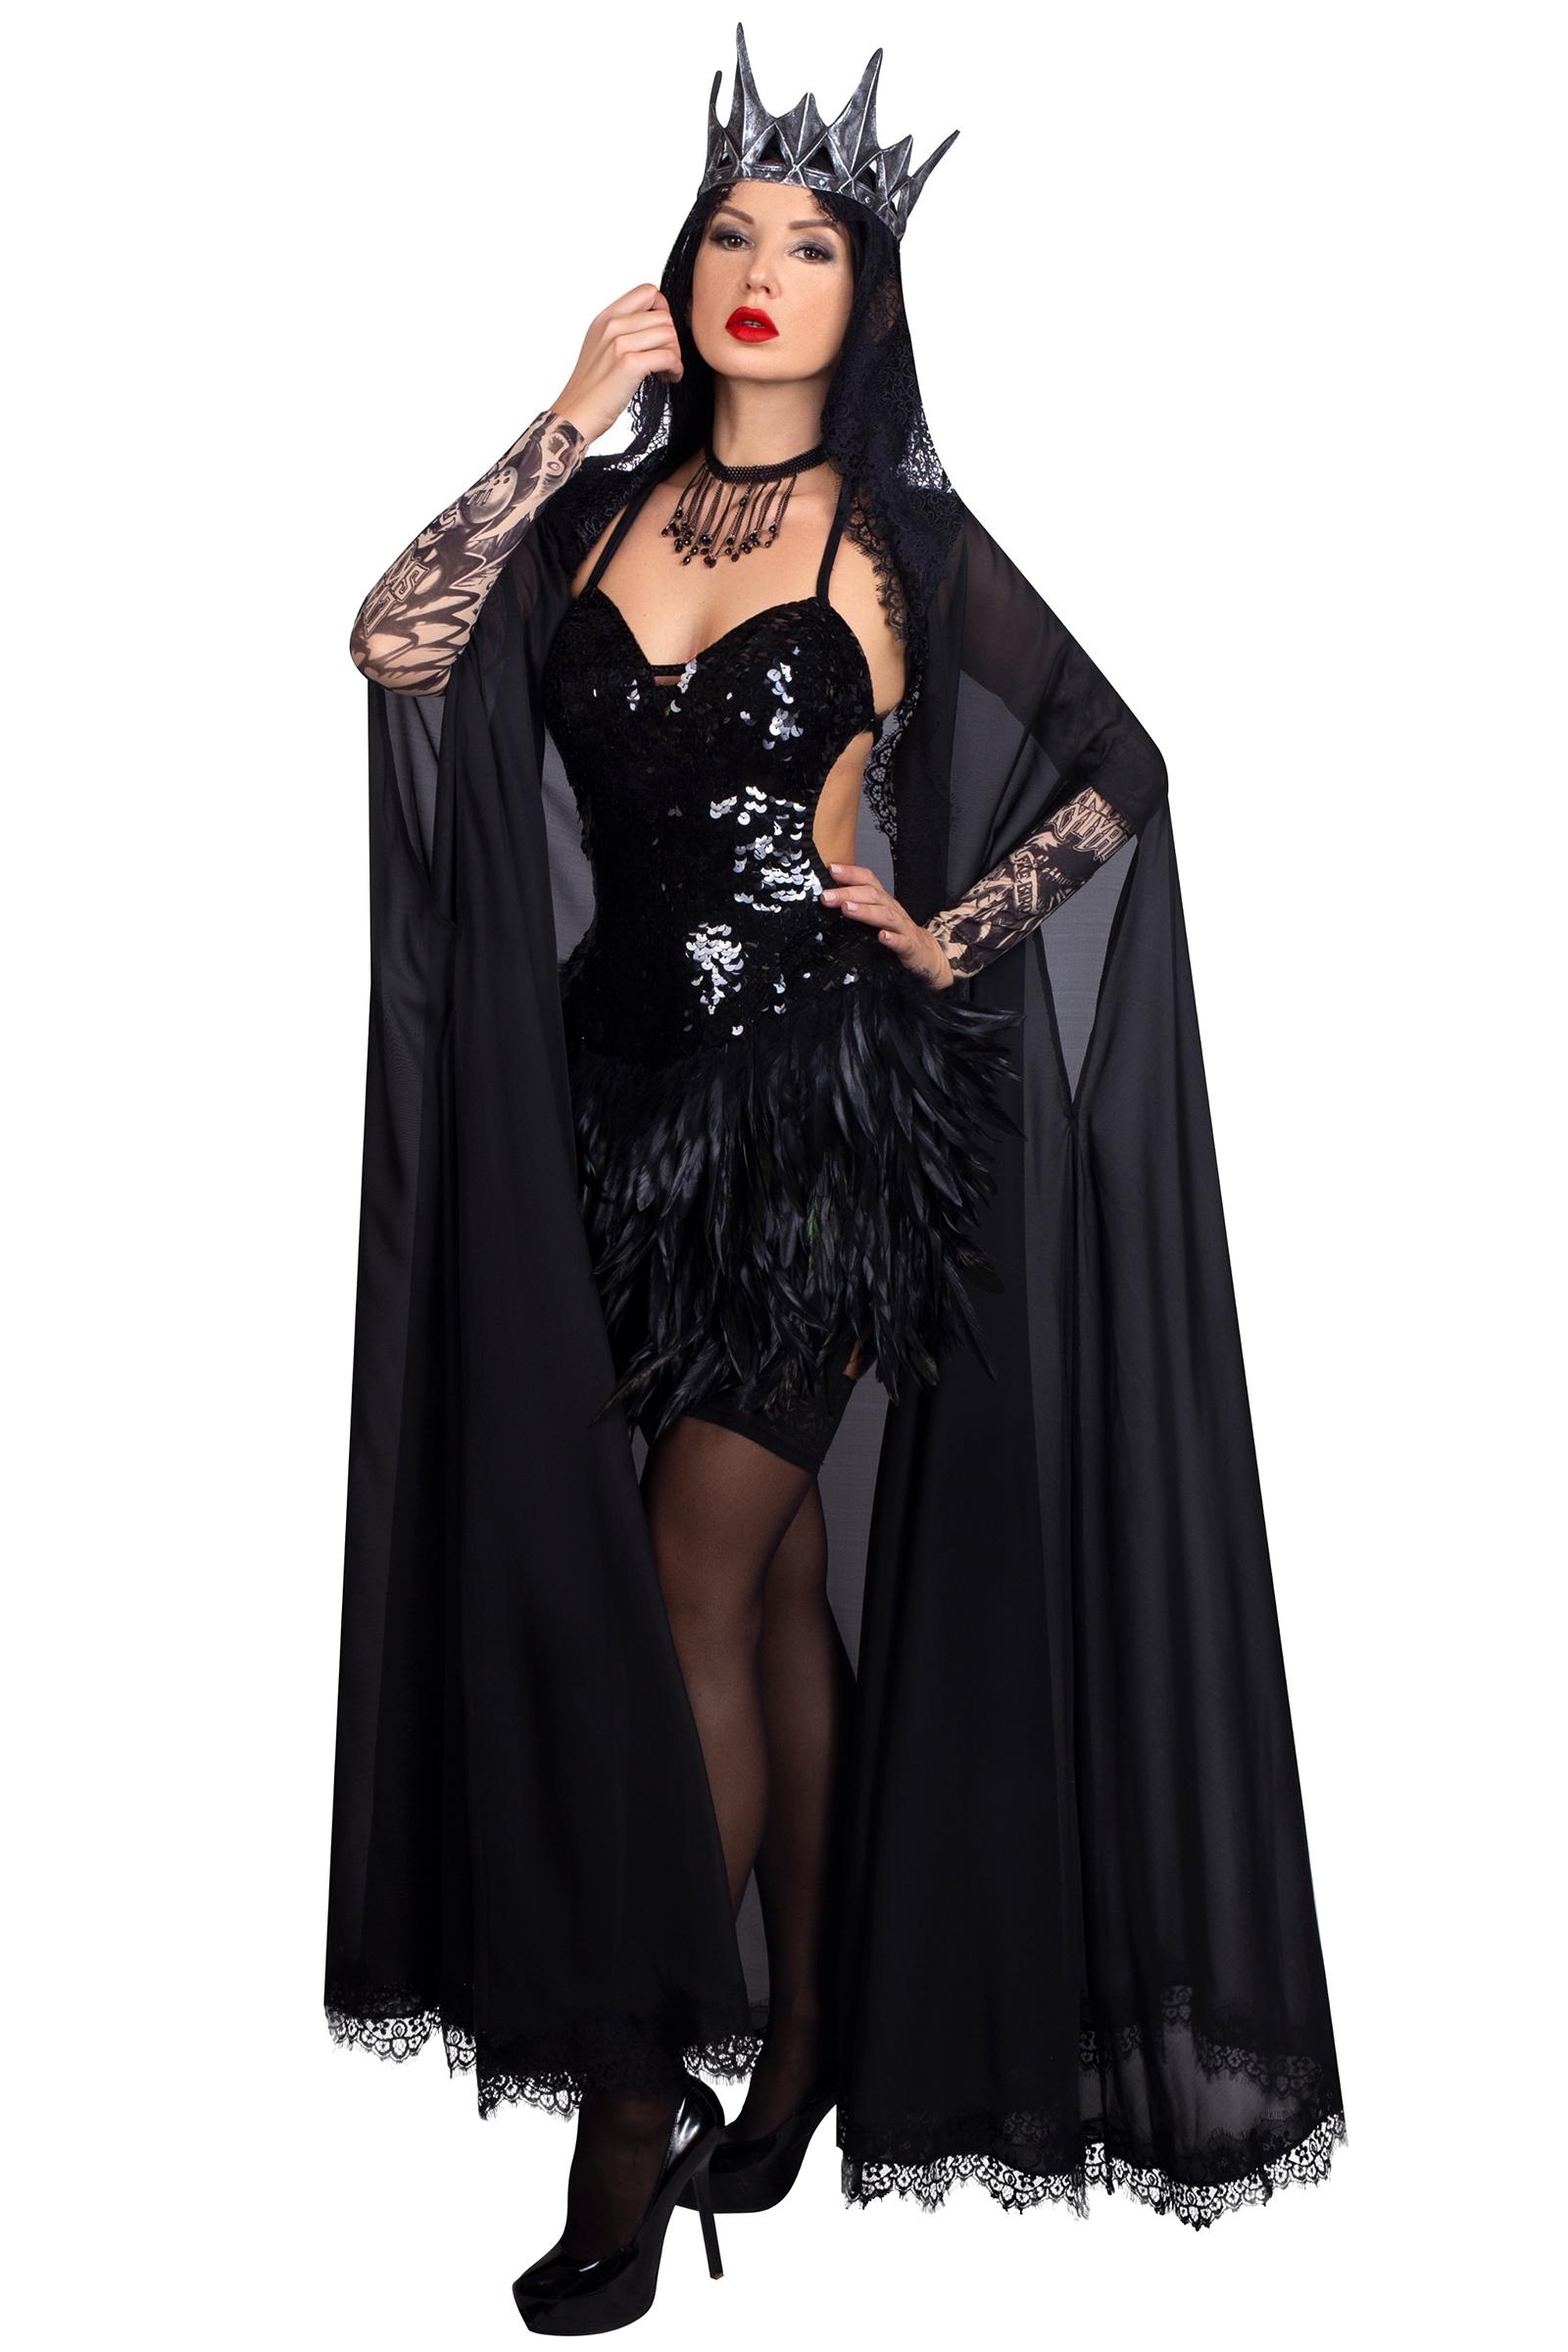 Взрослый карнавальный костюм Черный лебедь, 52-54 размер, отзывы